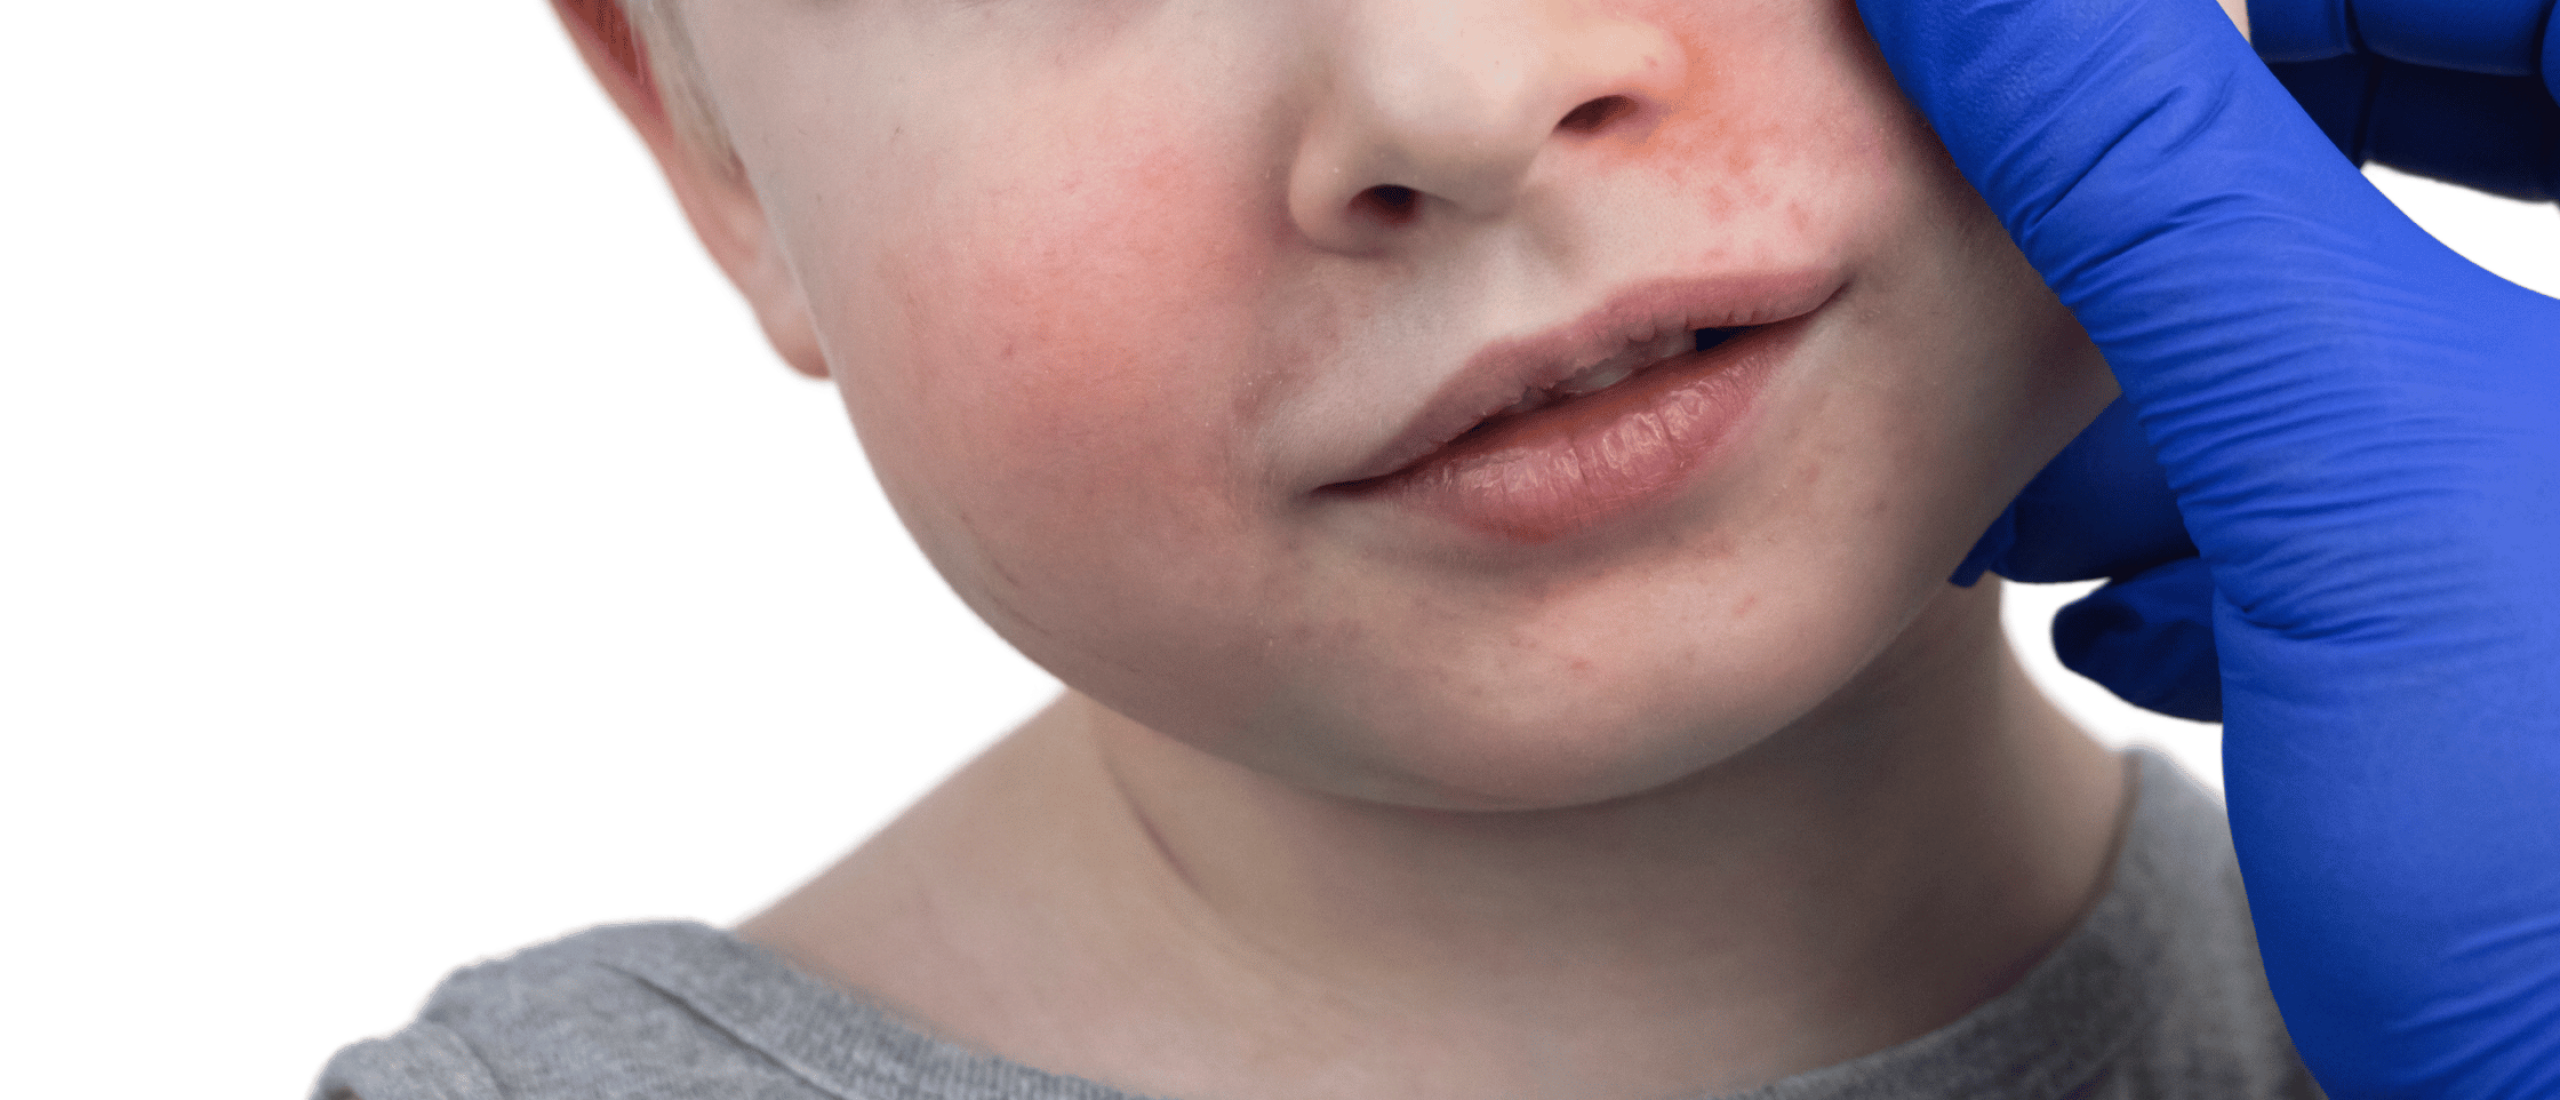 Vijfde ziekte: rode vlekjes op huid kind